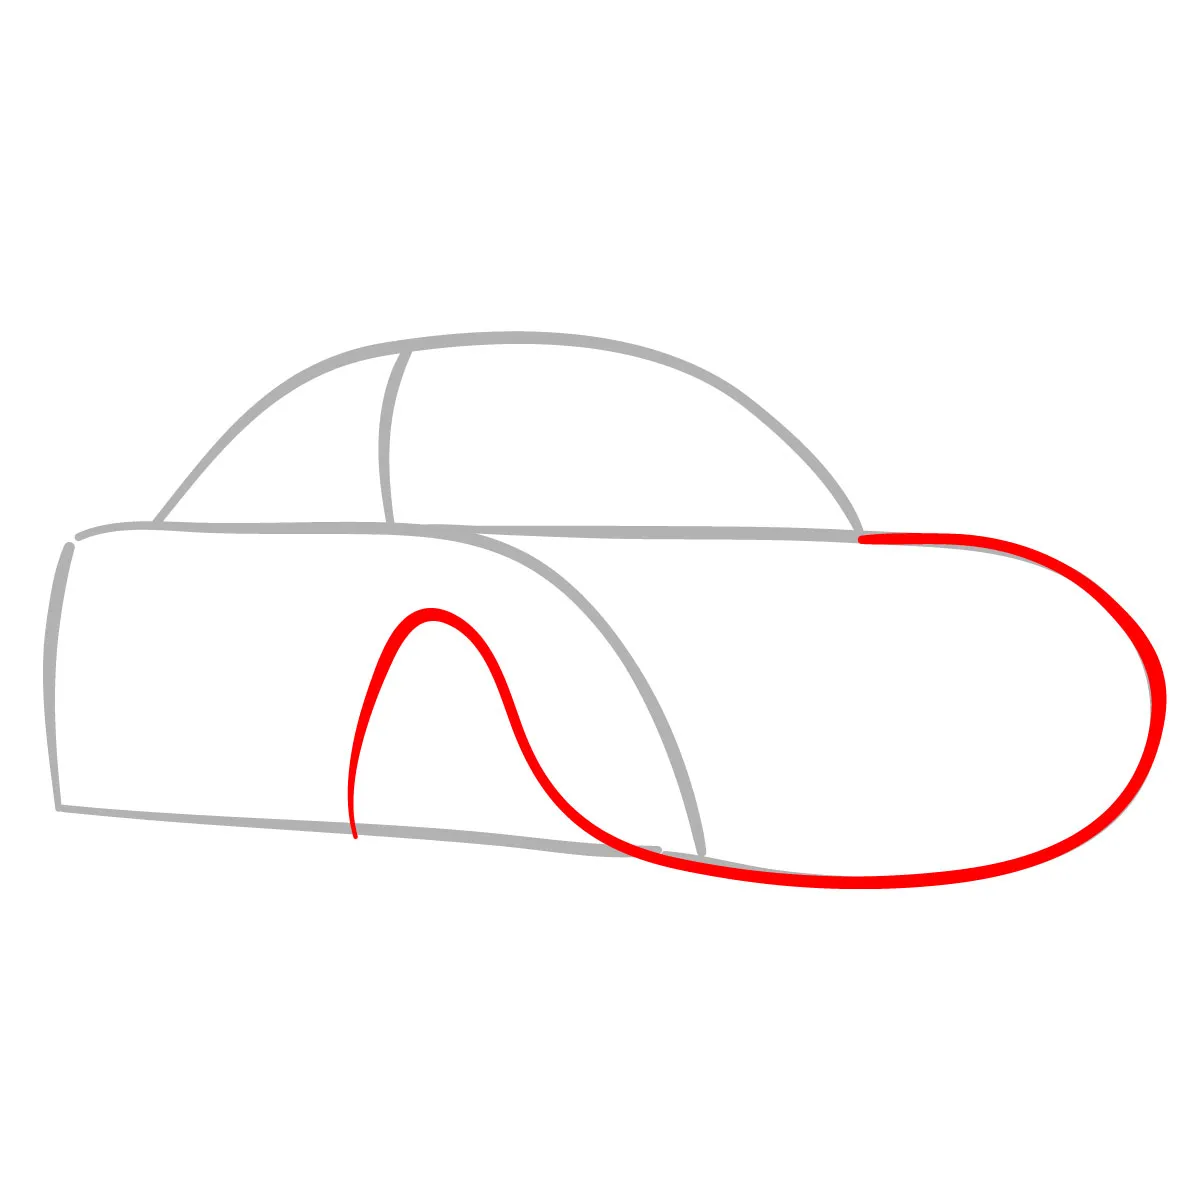 Vẽ kính xe ô tô